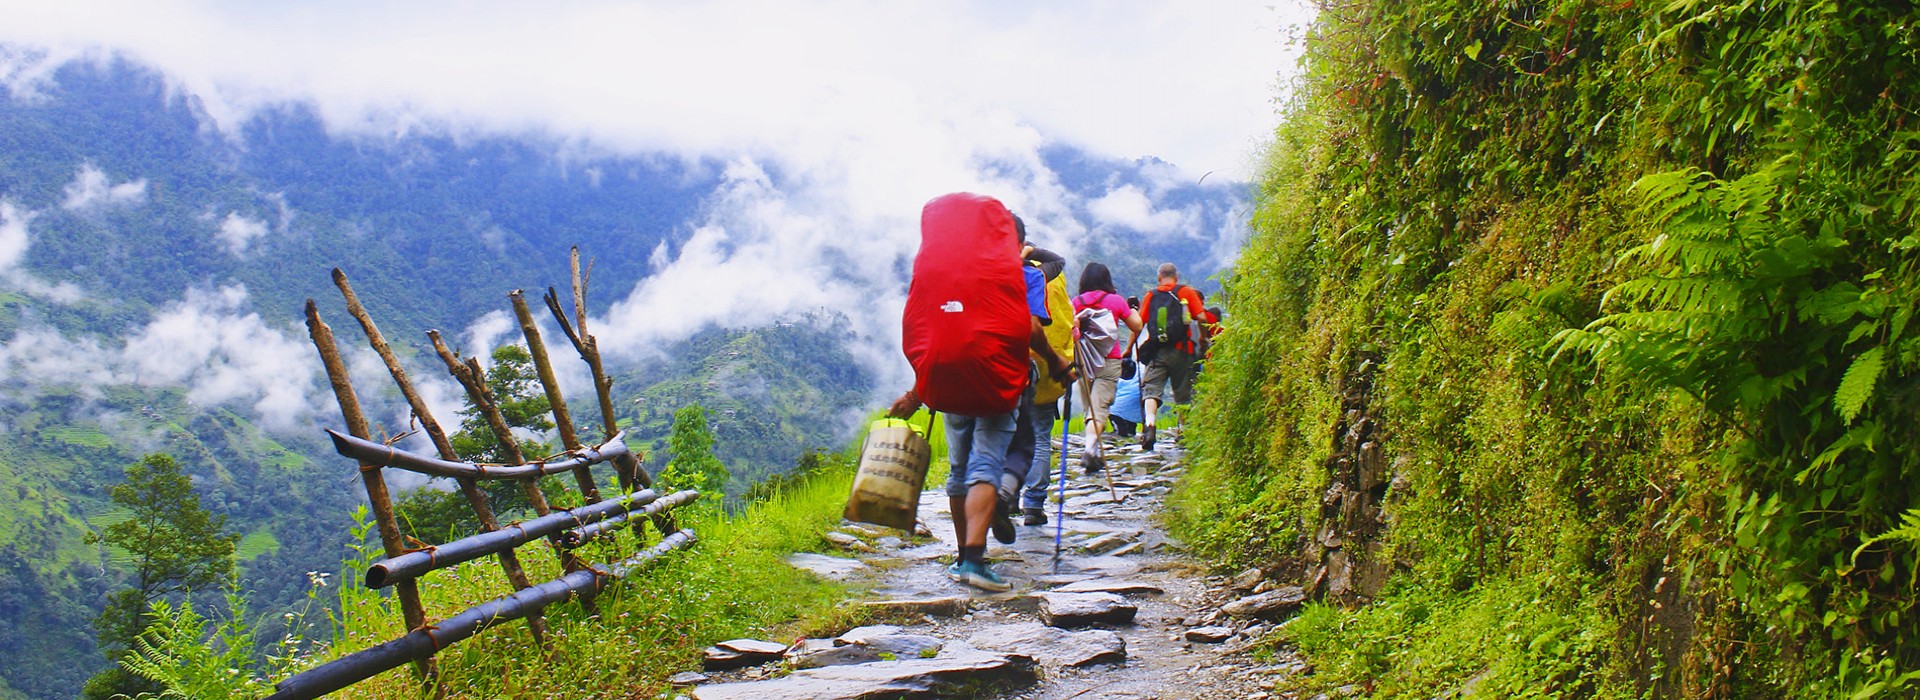 Chandragiri- Dakshinkali Hiking